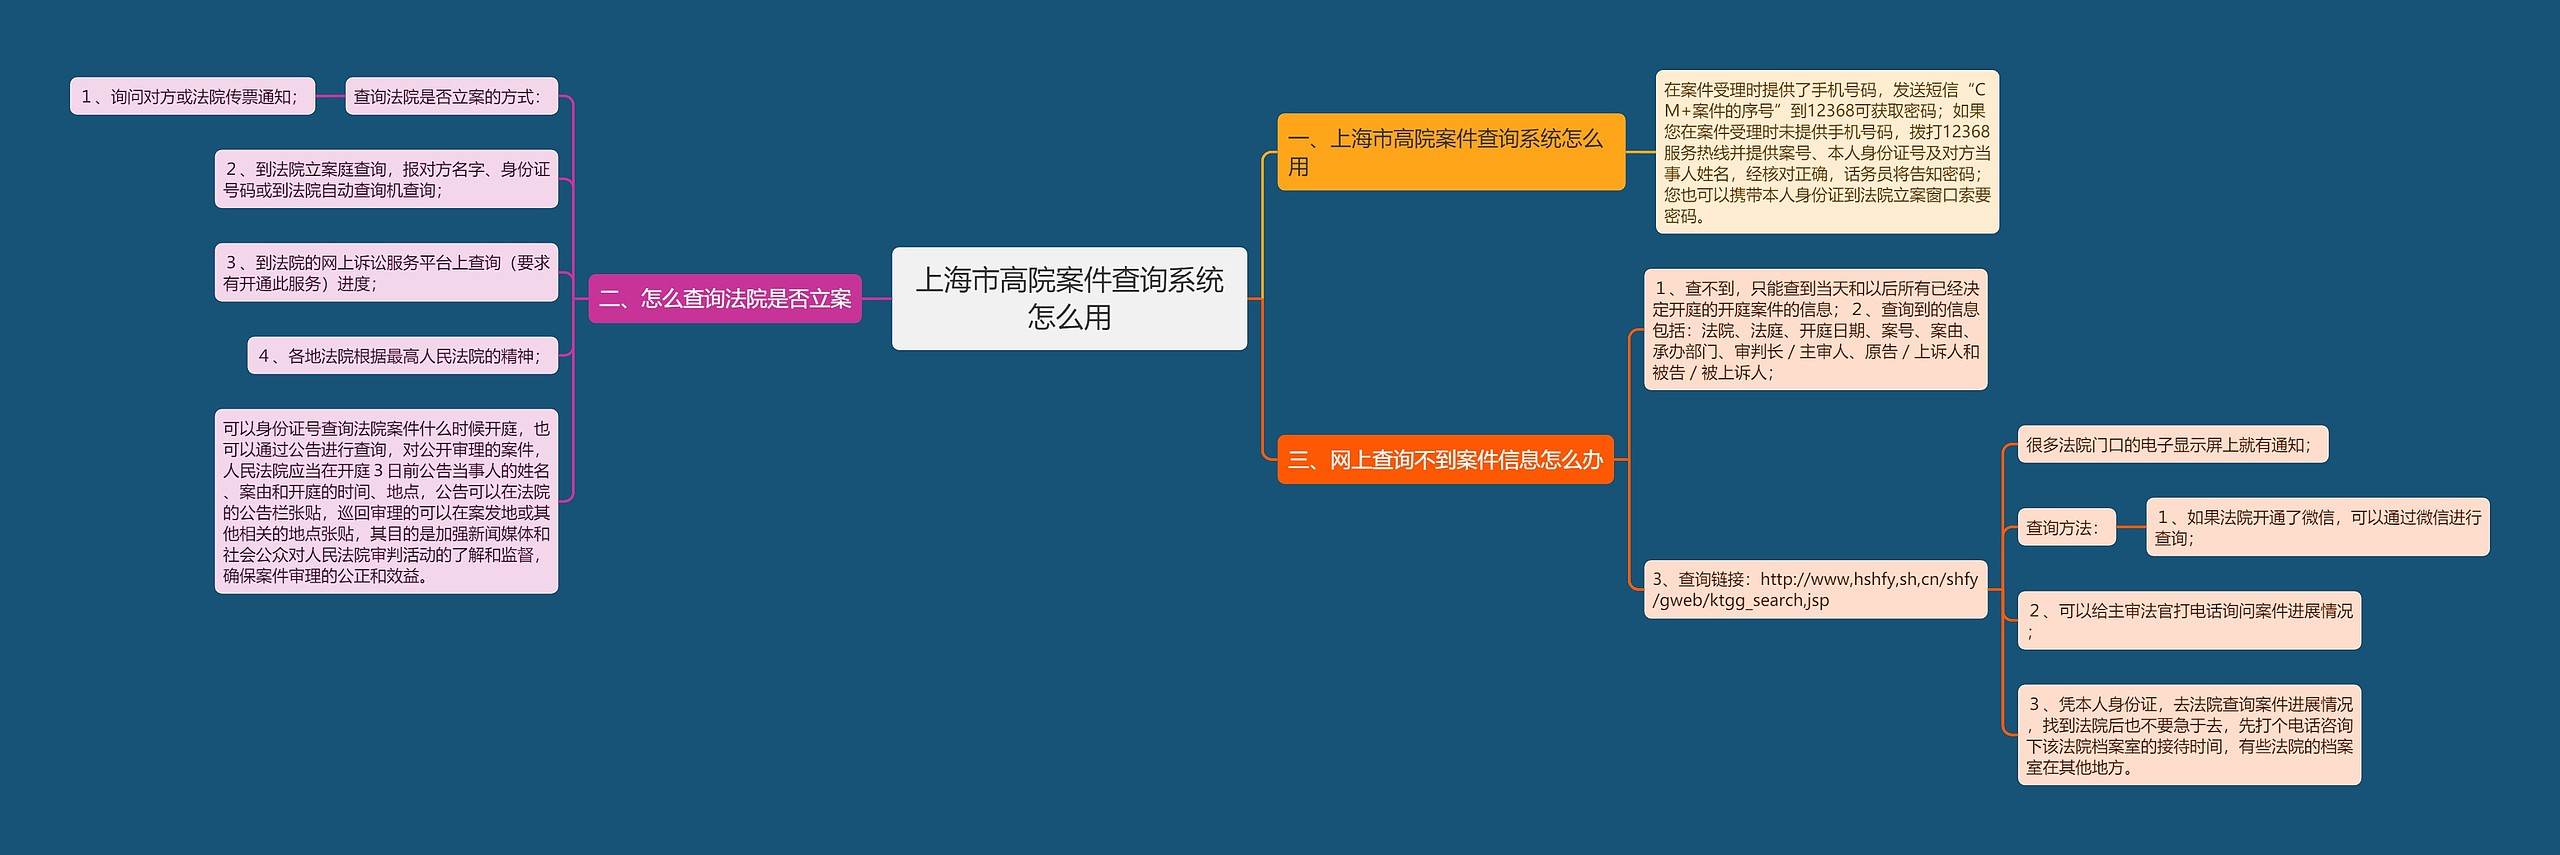 上海市高院案件查询系统怎么用